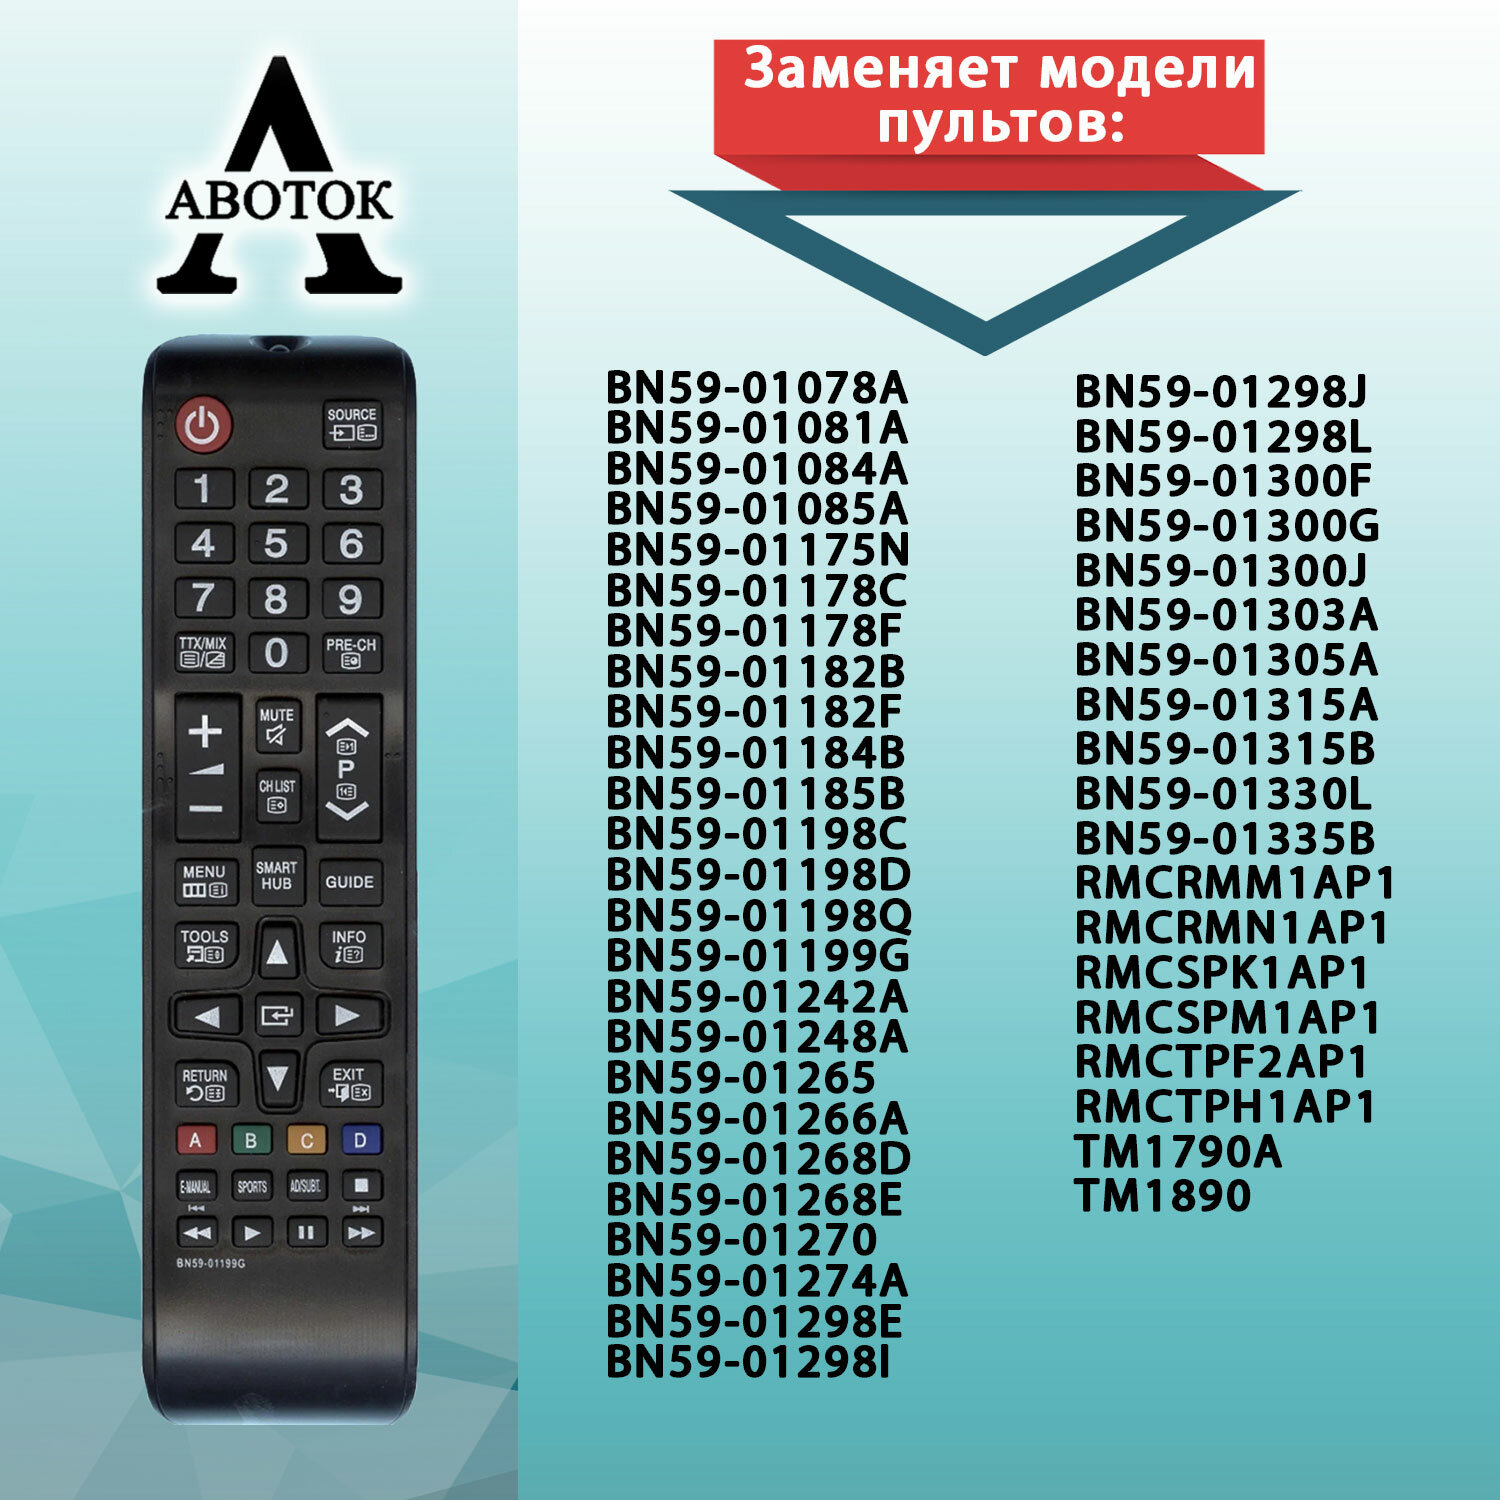 Пульт для телевизора Samsung (с батарейками в подарок) подойдёт для любого ЖК телевизора Самсунг.